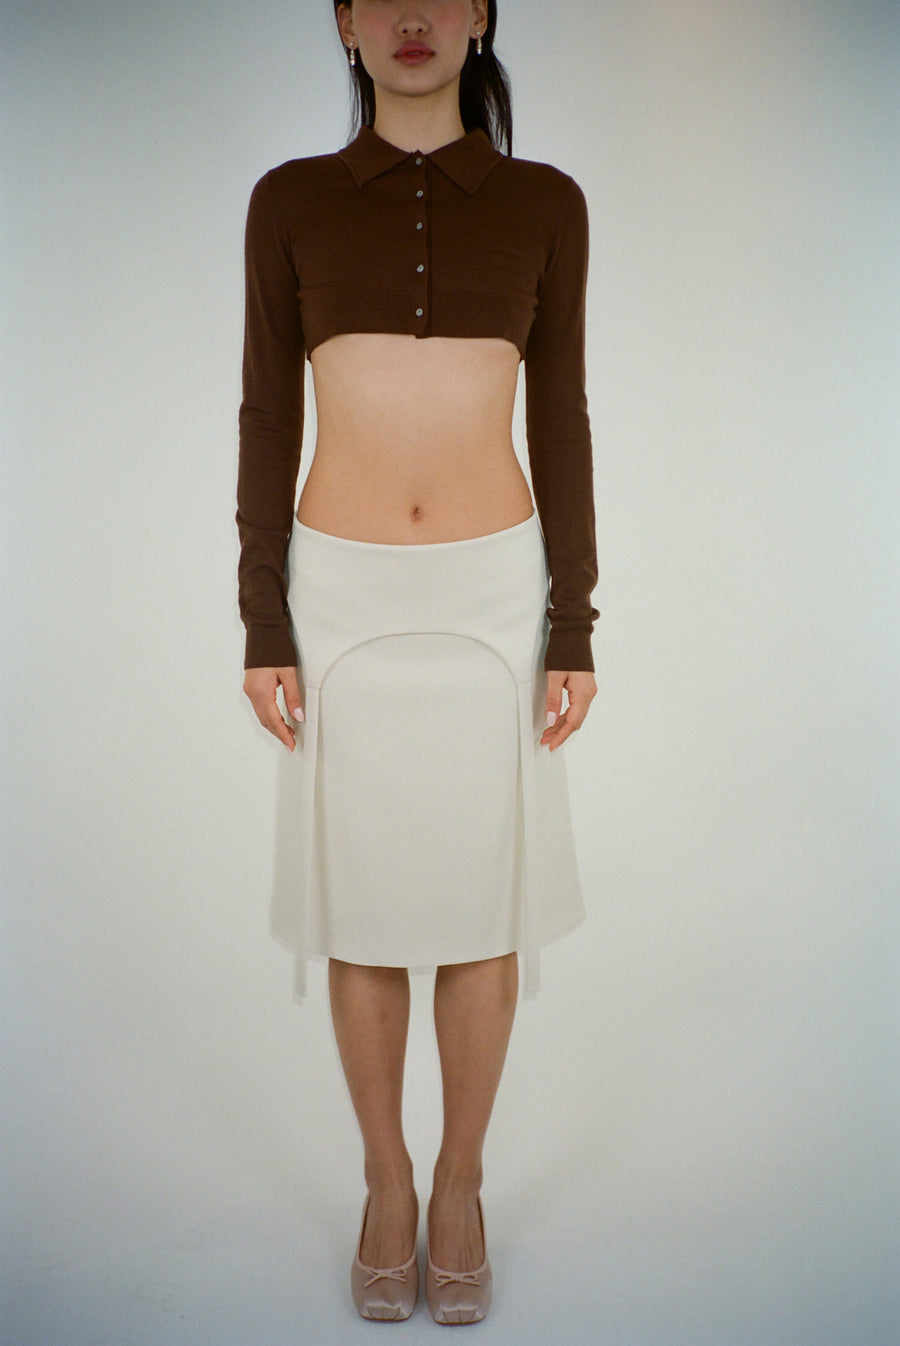 Knee length skirt in off white with garter strap detail on model